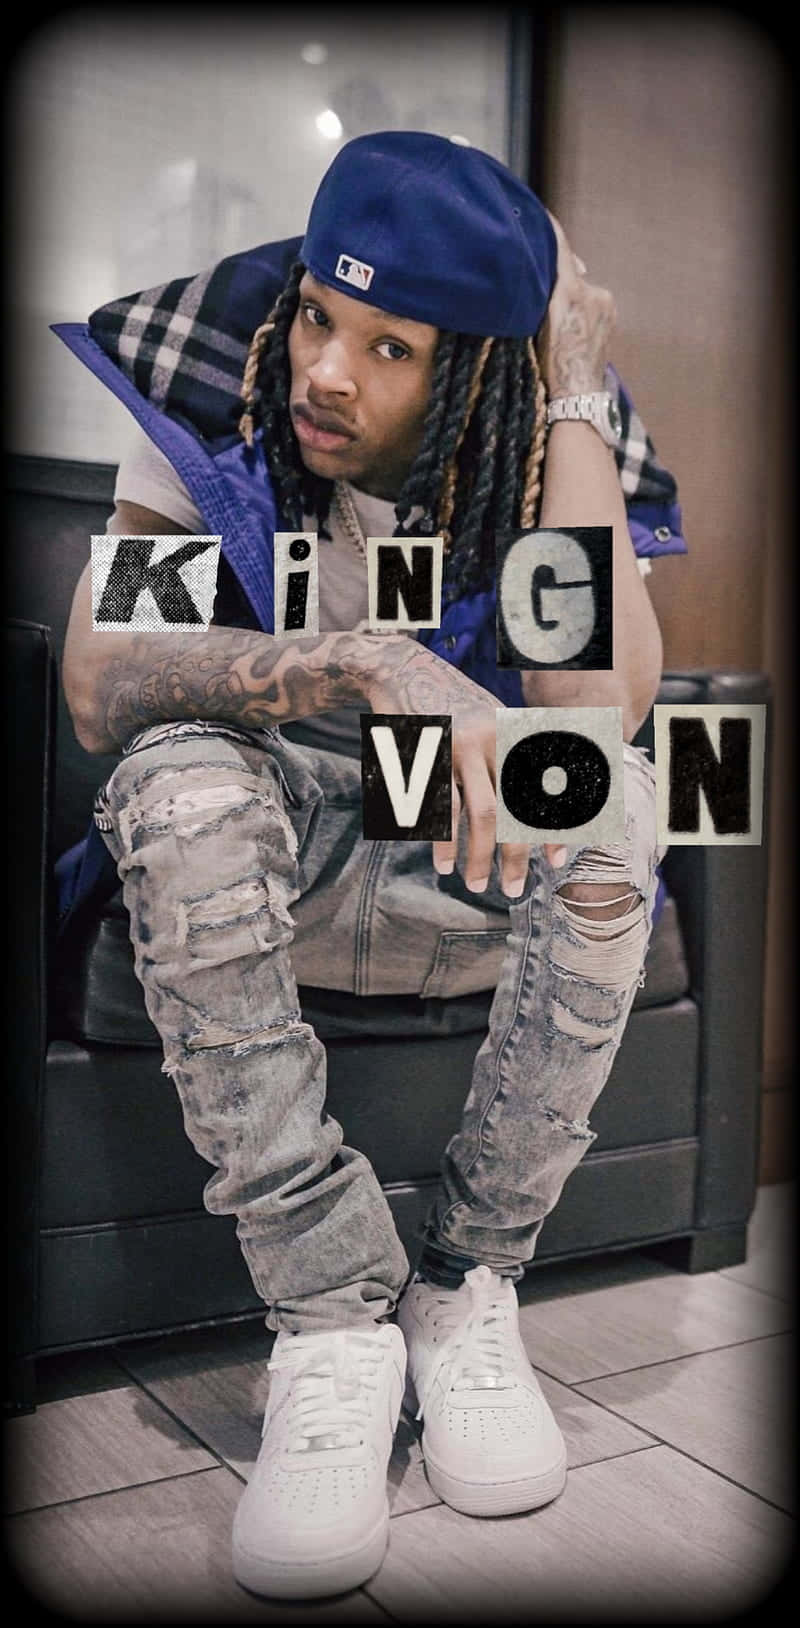 Kingvon Bilder